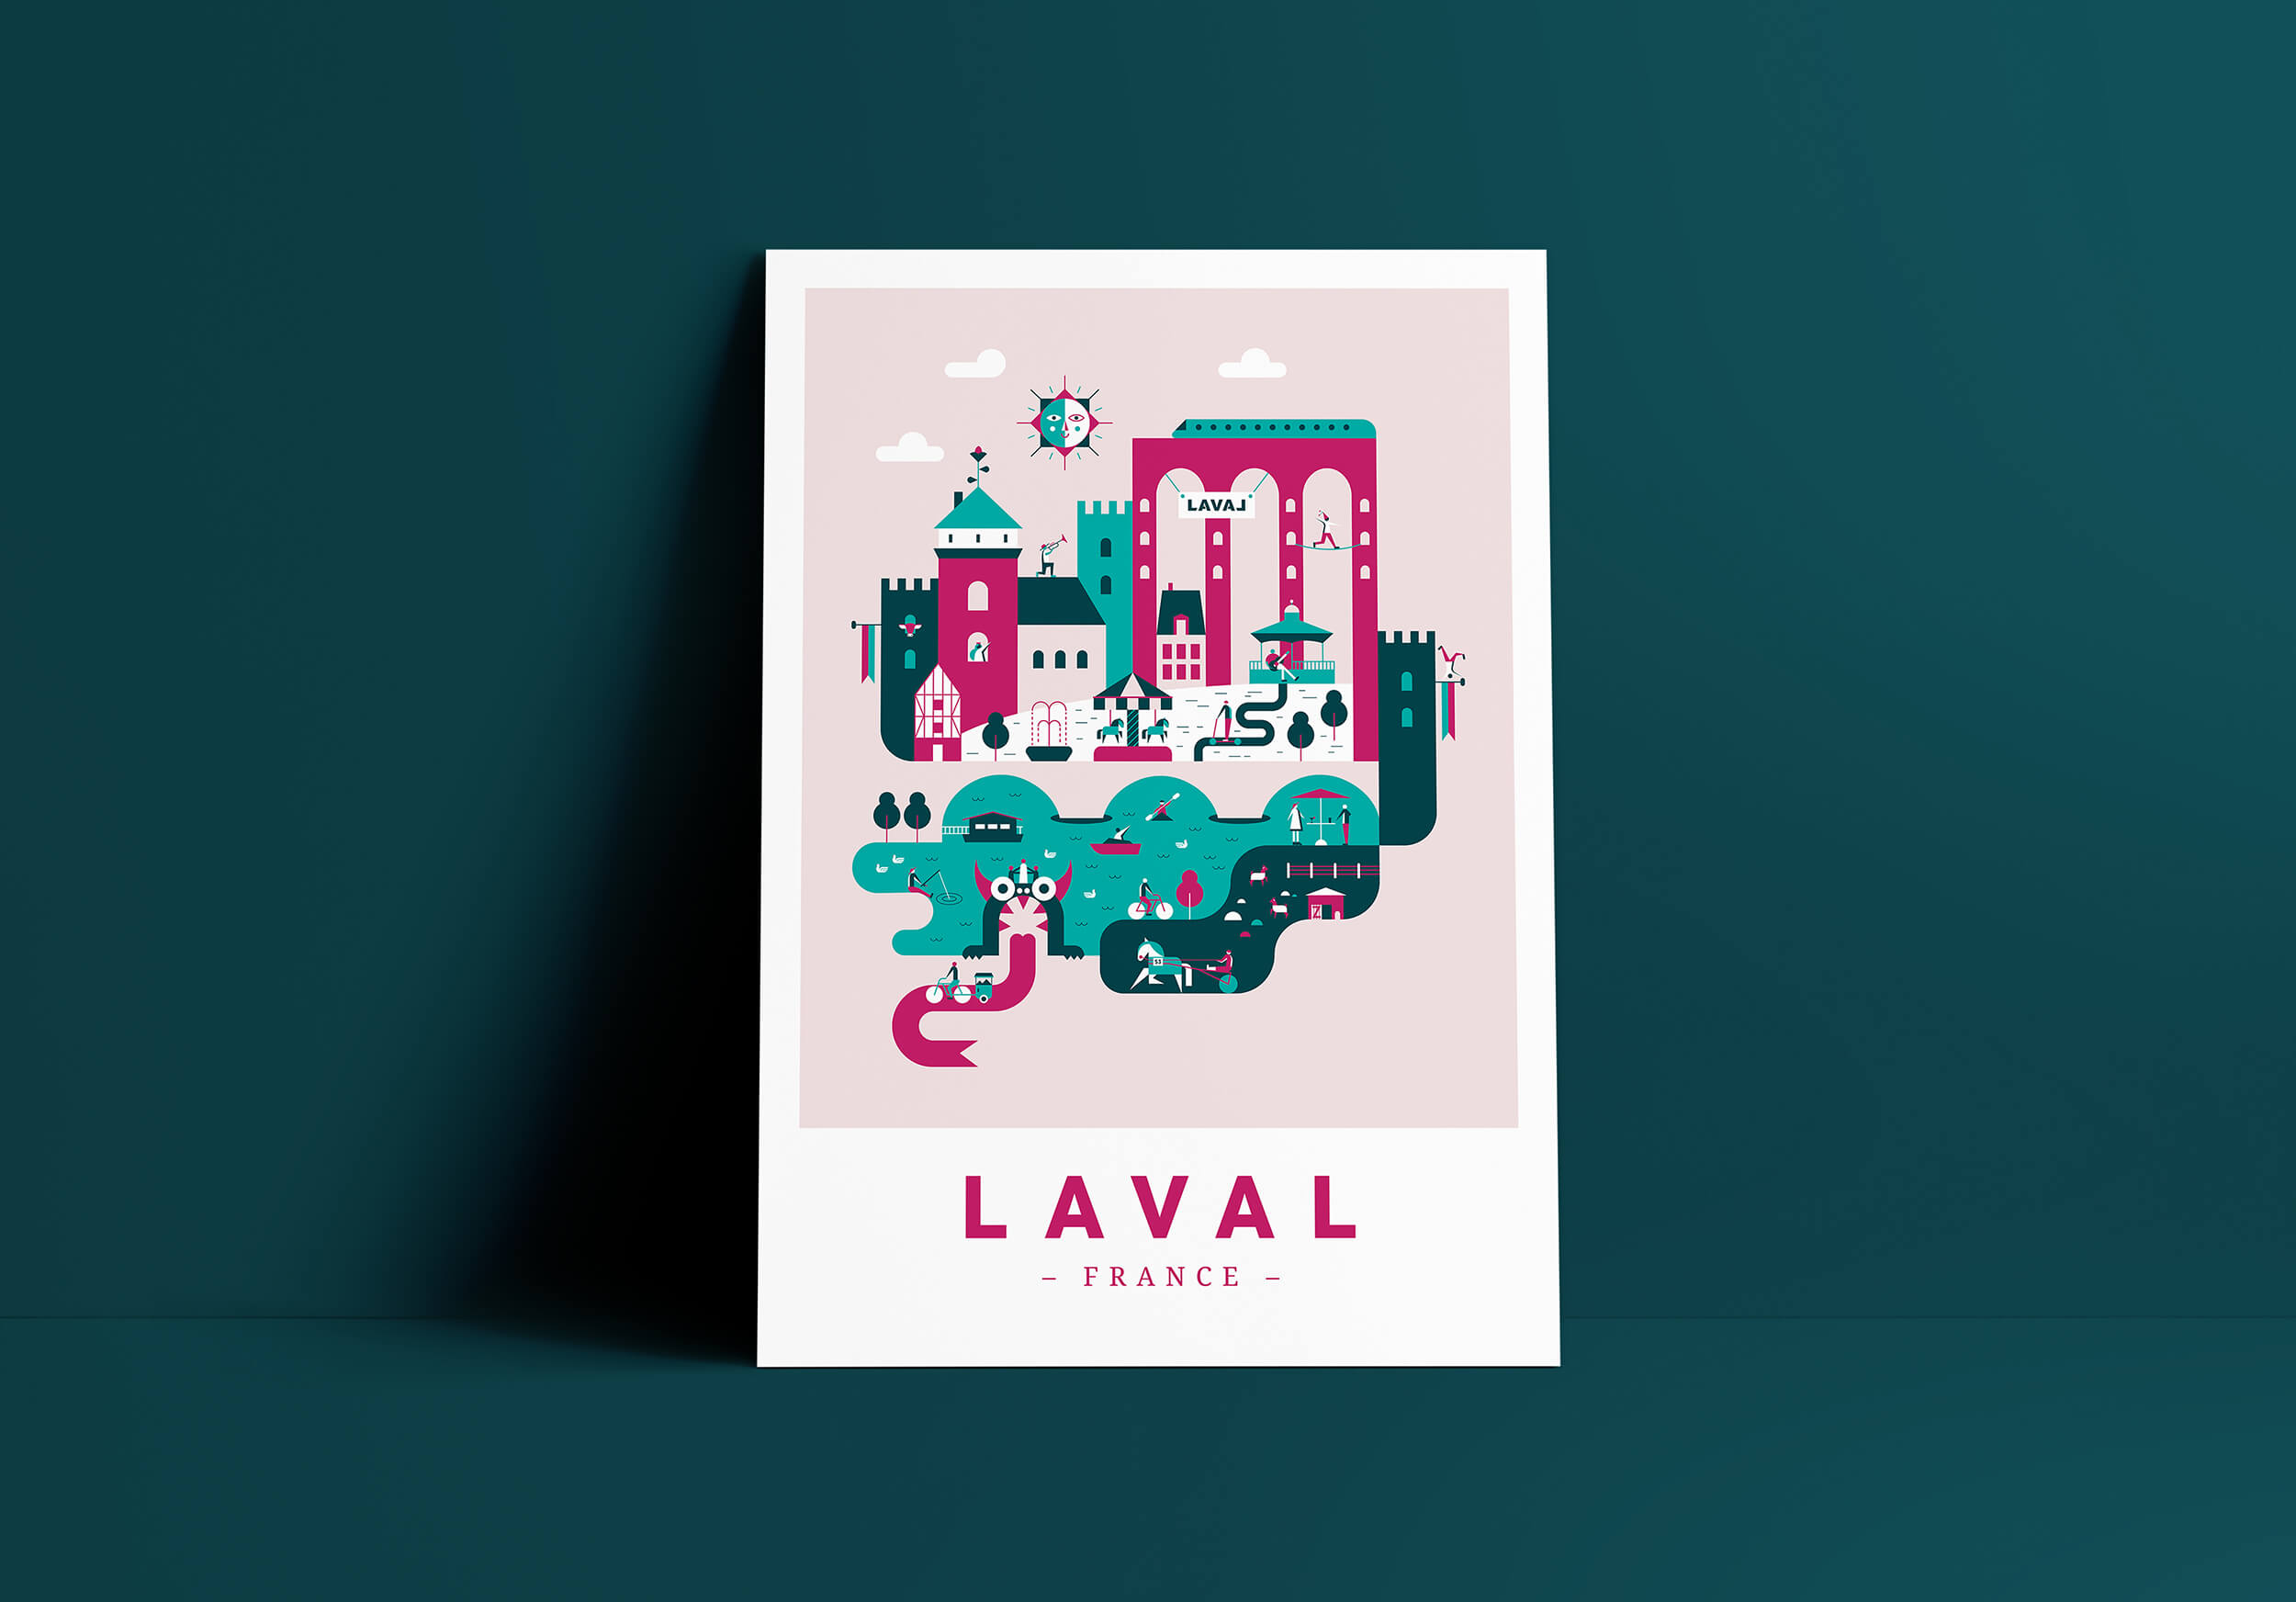 Illustration de la ville de Laval en Mayenne, France